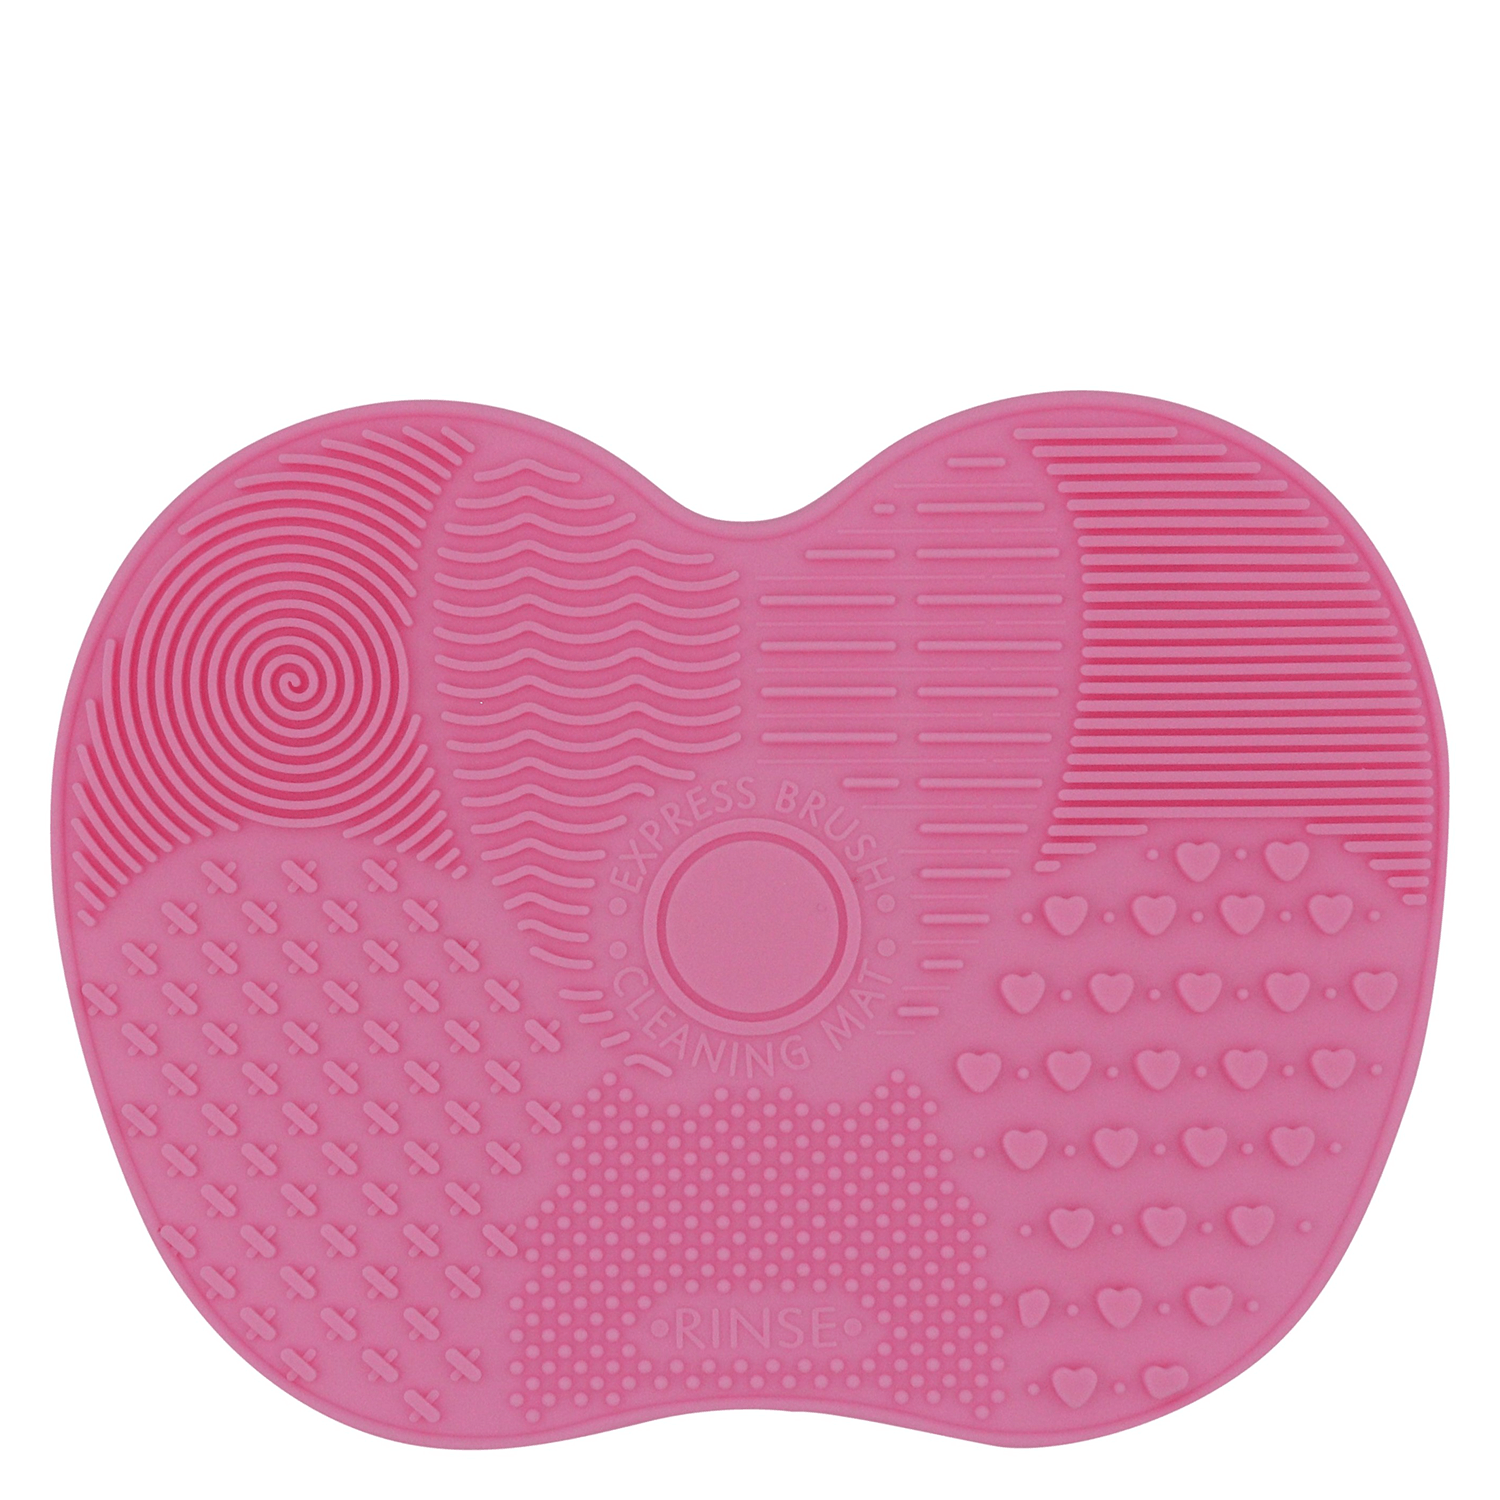 Produktbild von VBEAUTY Make Up - Pinsel-Reinigungsmatte Soft Pink